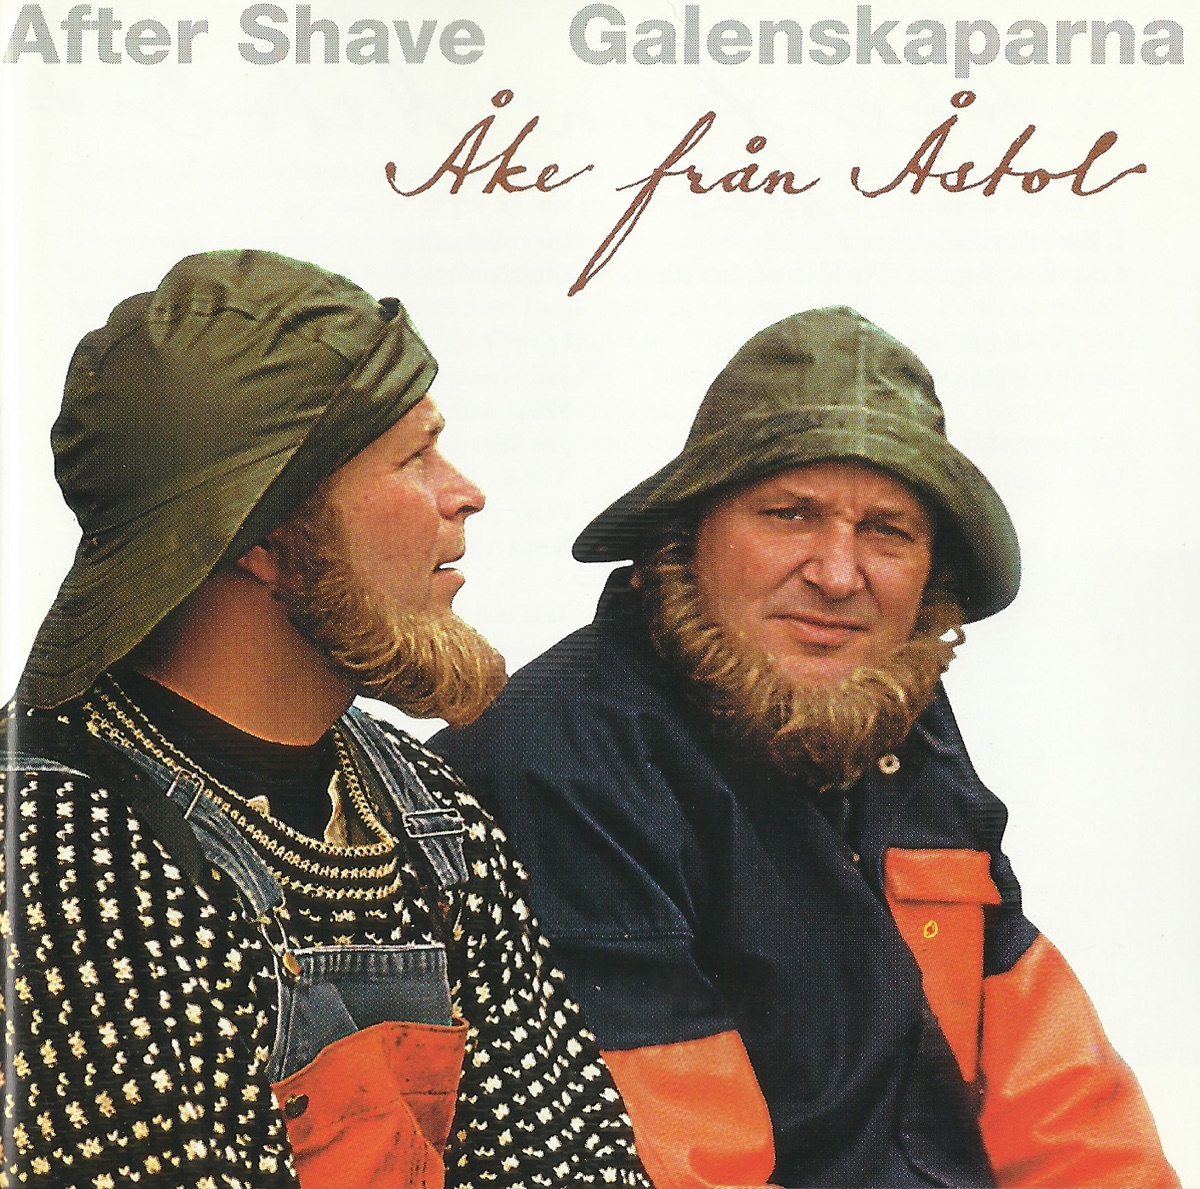 ‎Åke Från Åstol - Album by Galenskaparna & After Shave - Apple Music